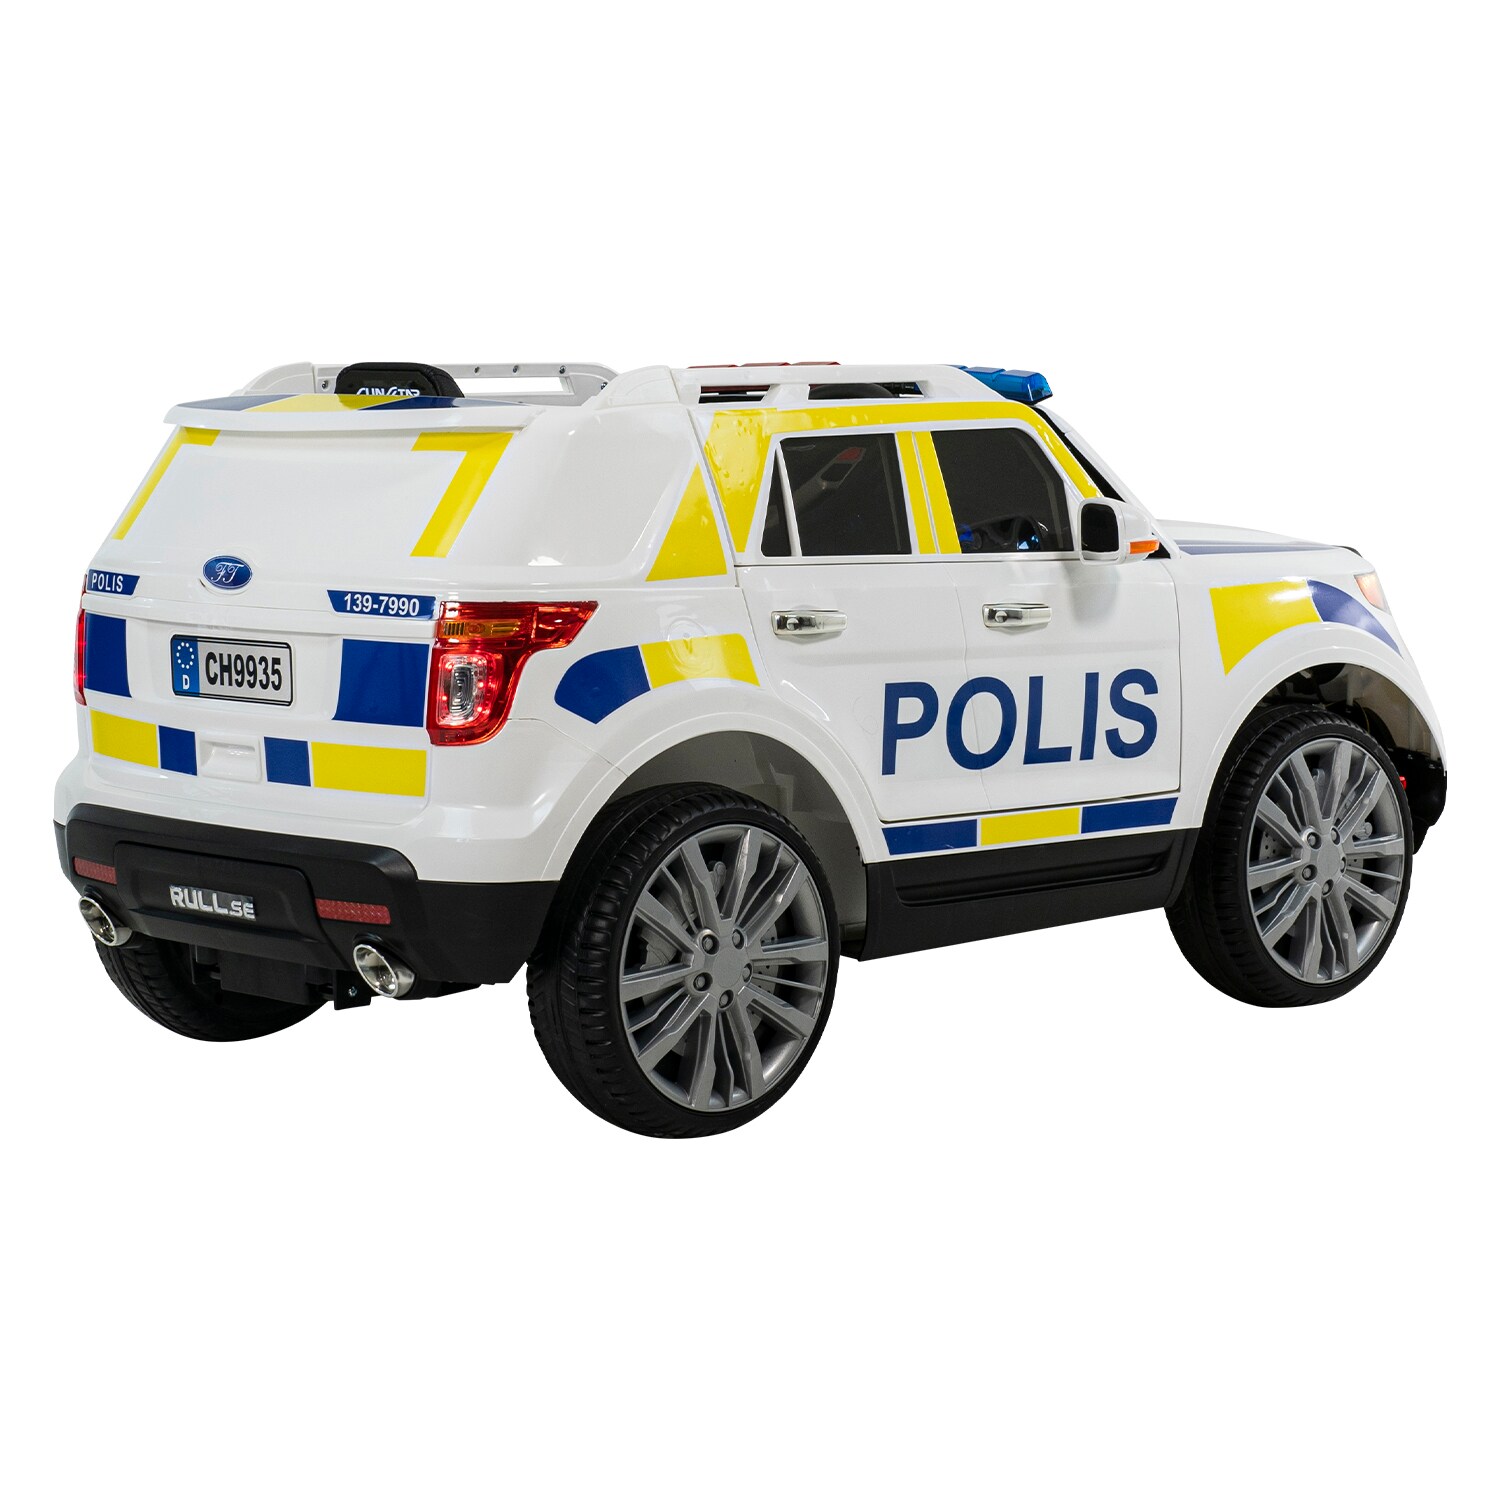 Sähköauto Poliisiauto